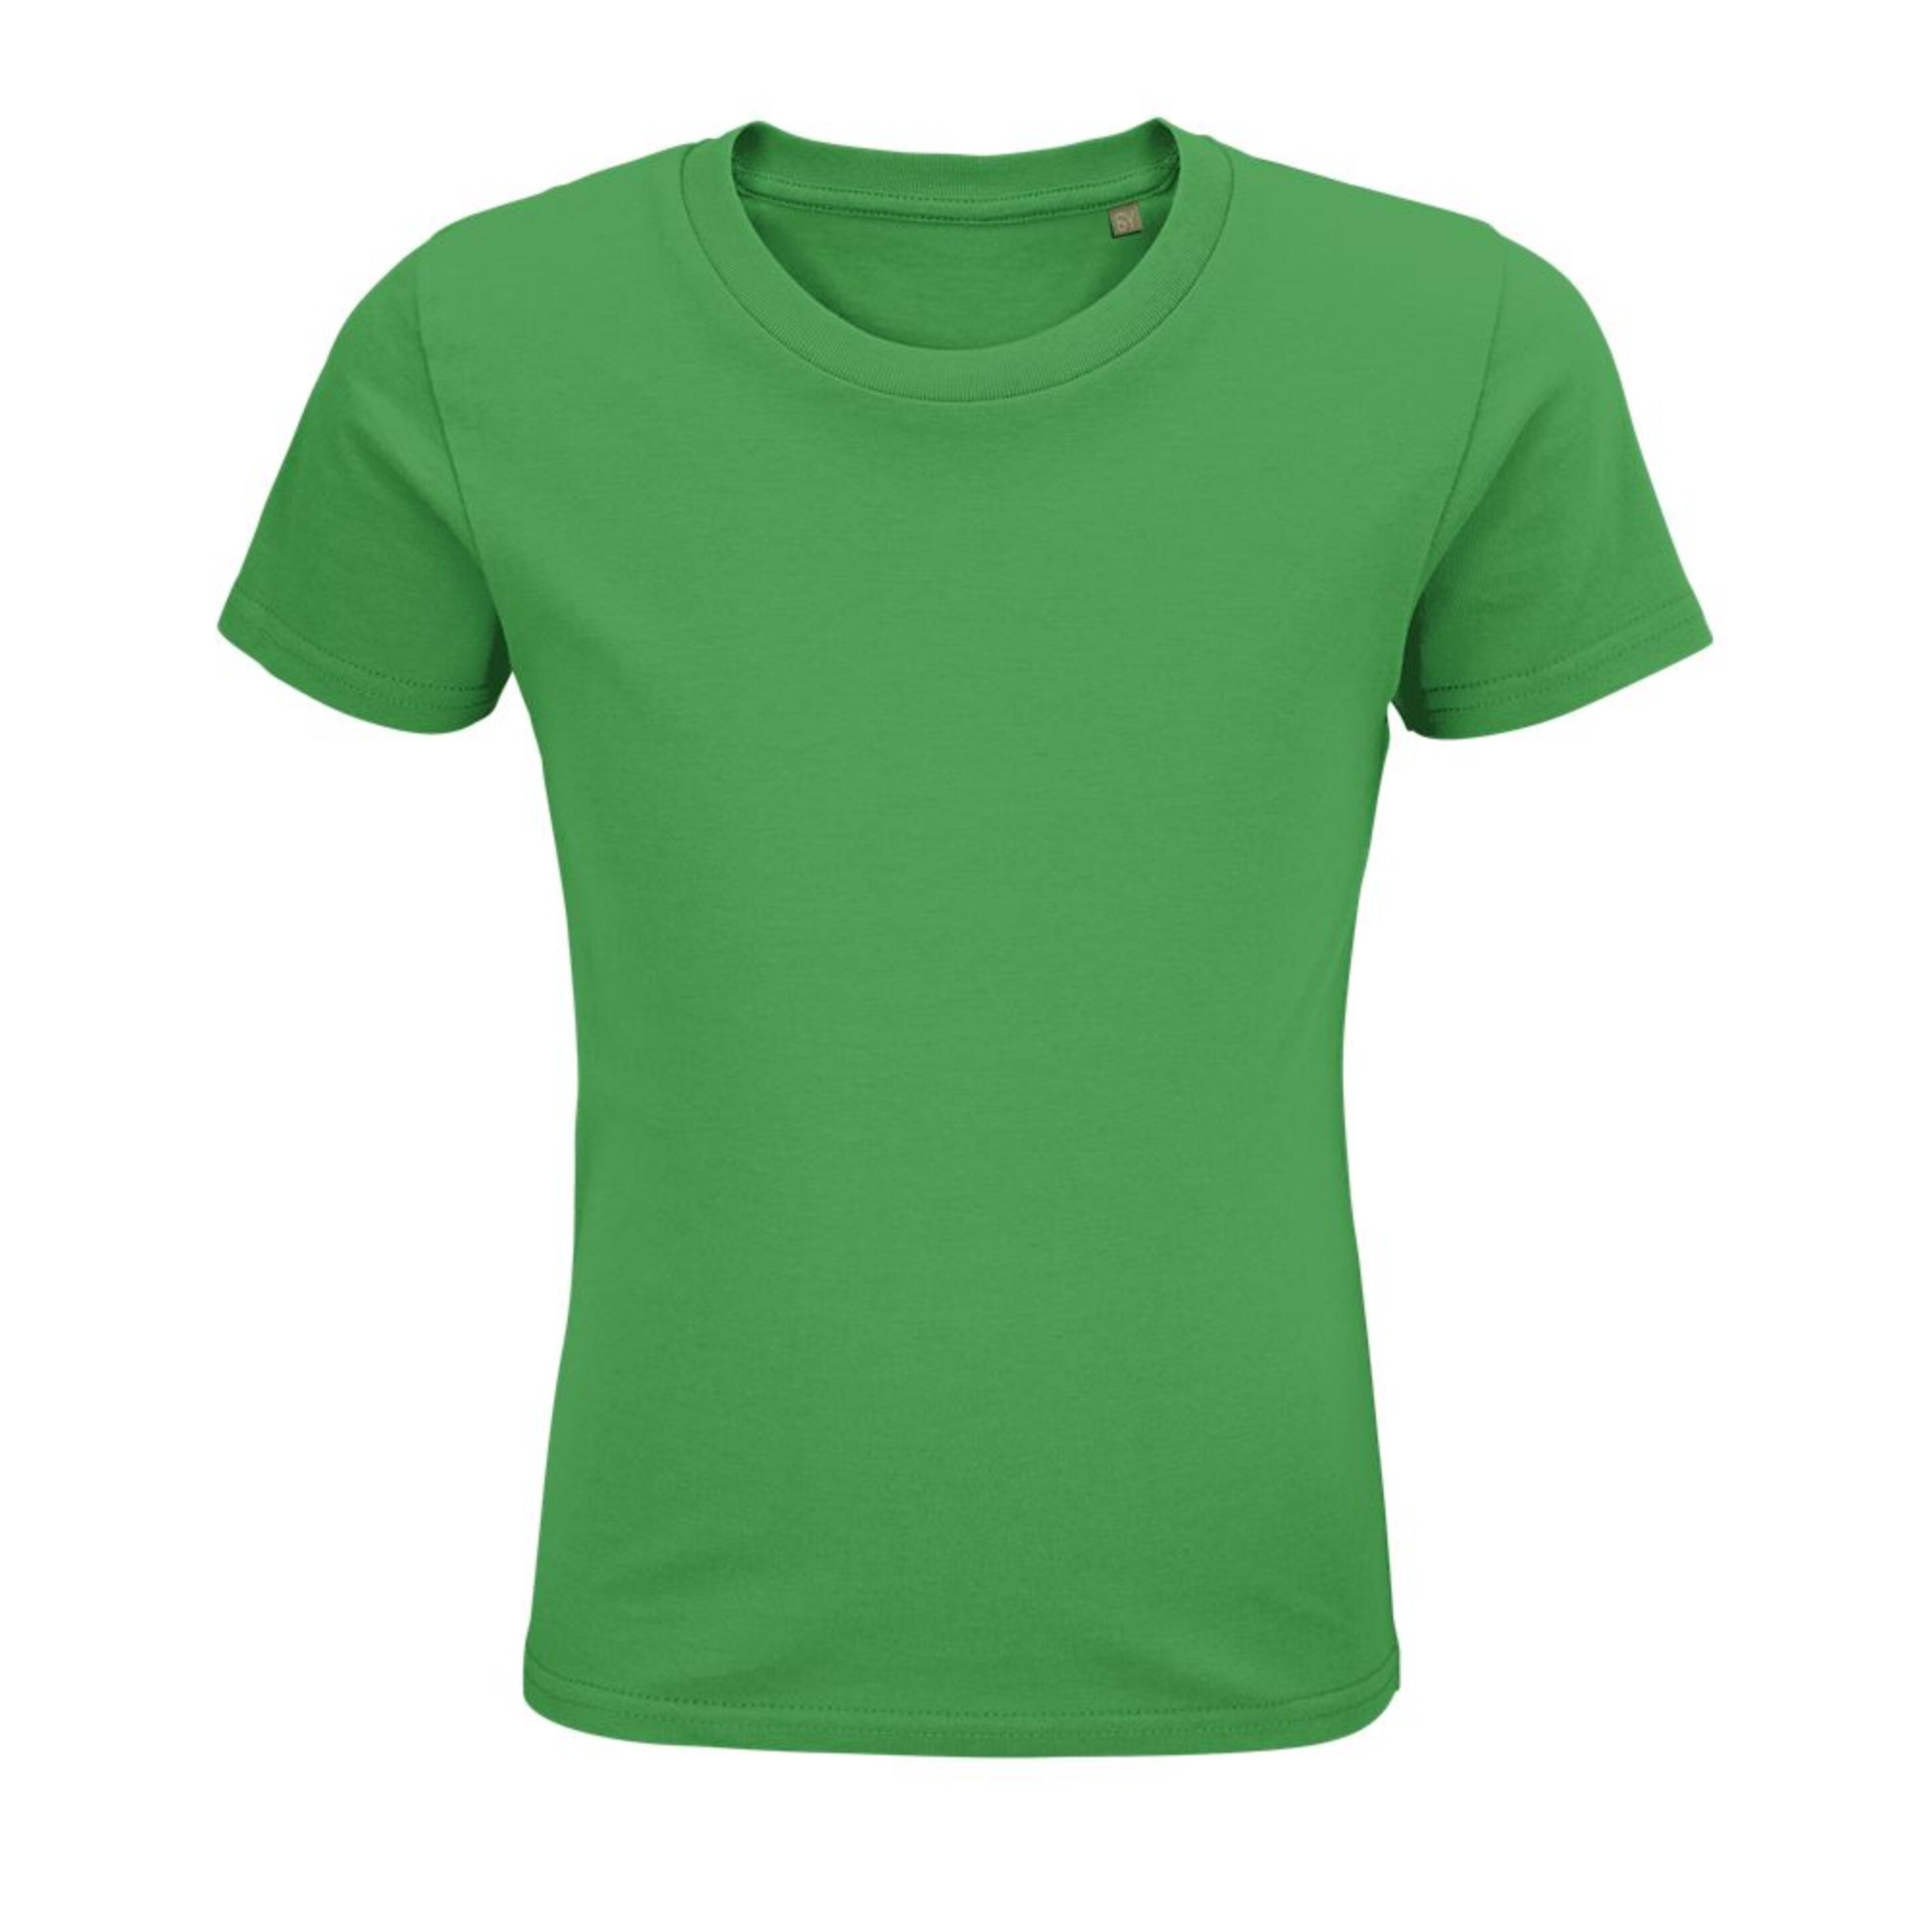 Camiseta Marnaula Pionner - verde - 